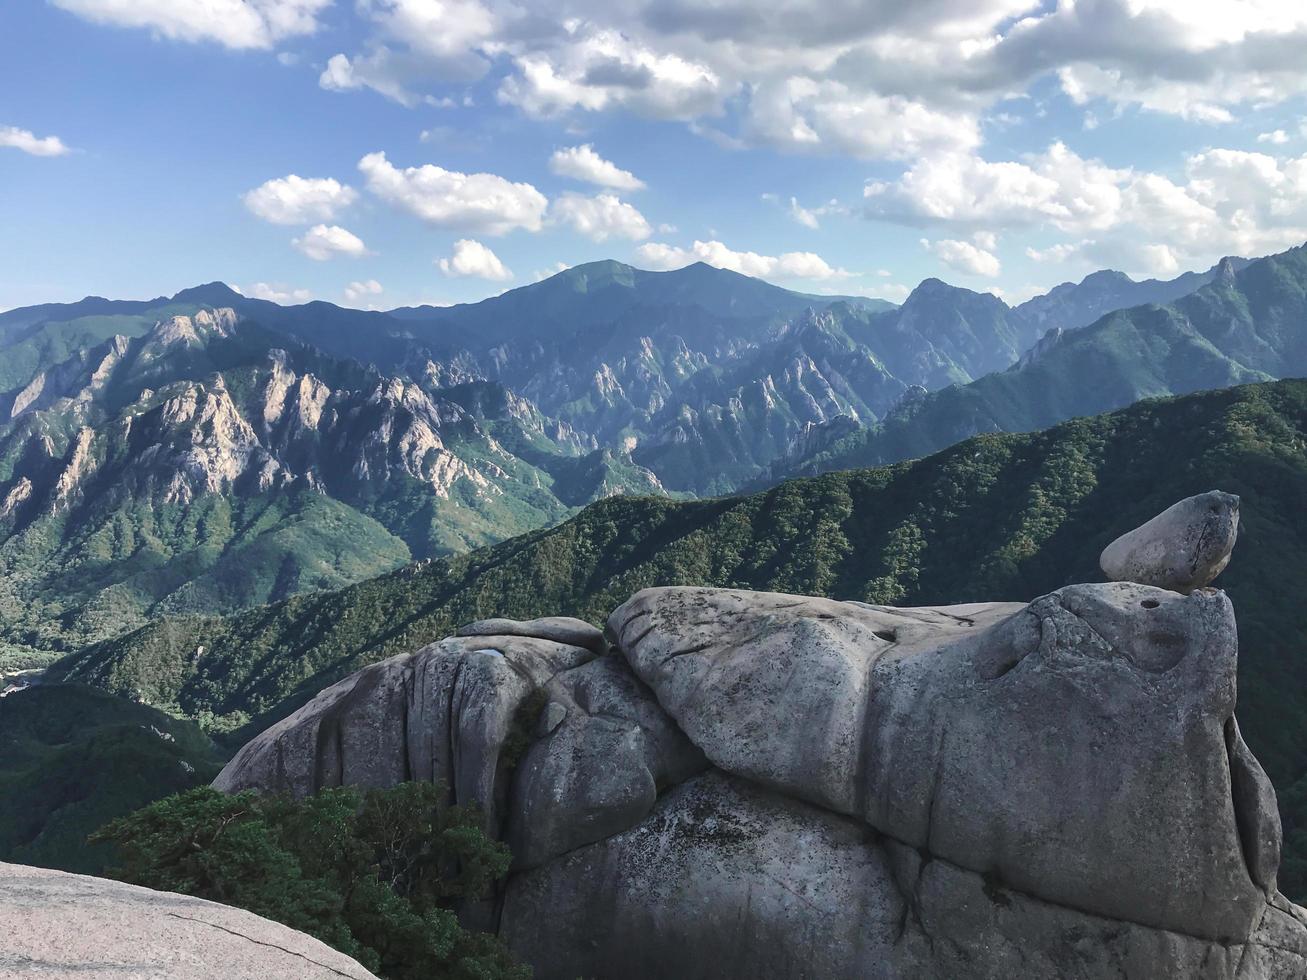 Big rocks at Seoraksan National Park, South Korea photo